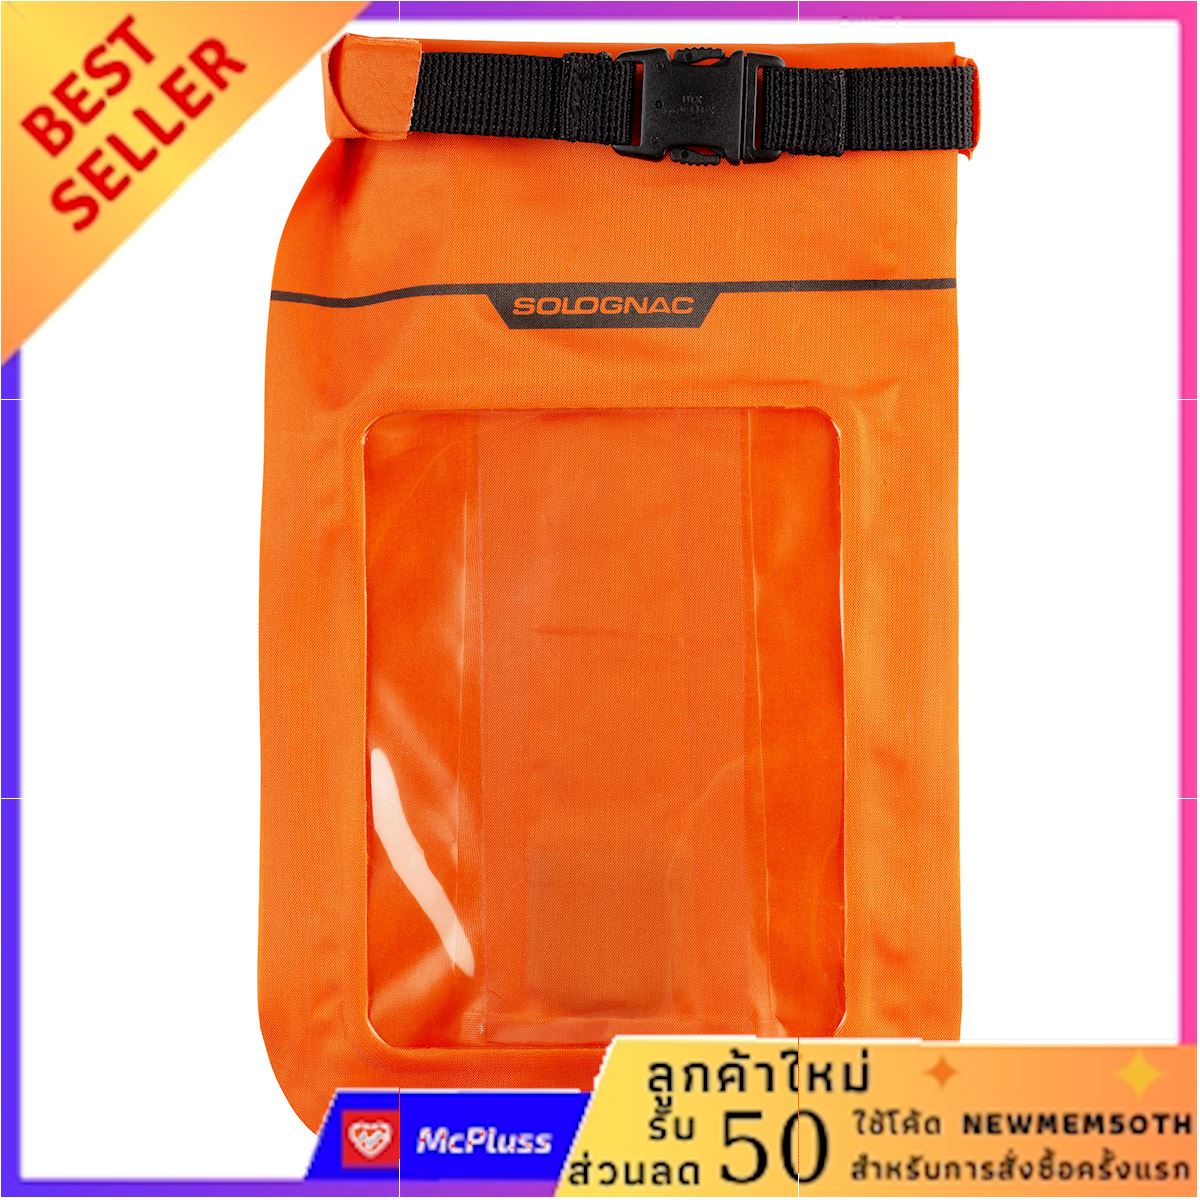 กระเป๋ากันน้ำรุ่น X-ACCESS (สีส้ม) ลดหนักมากๆ